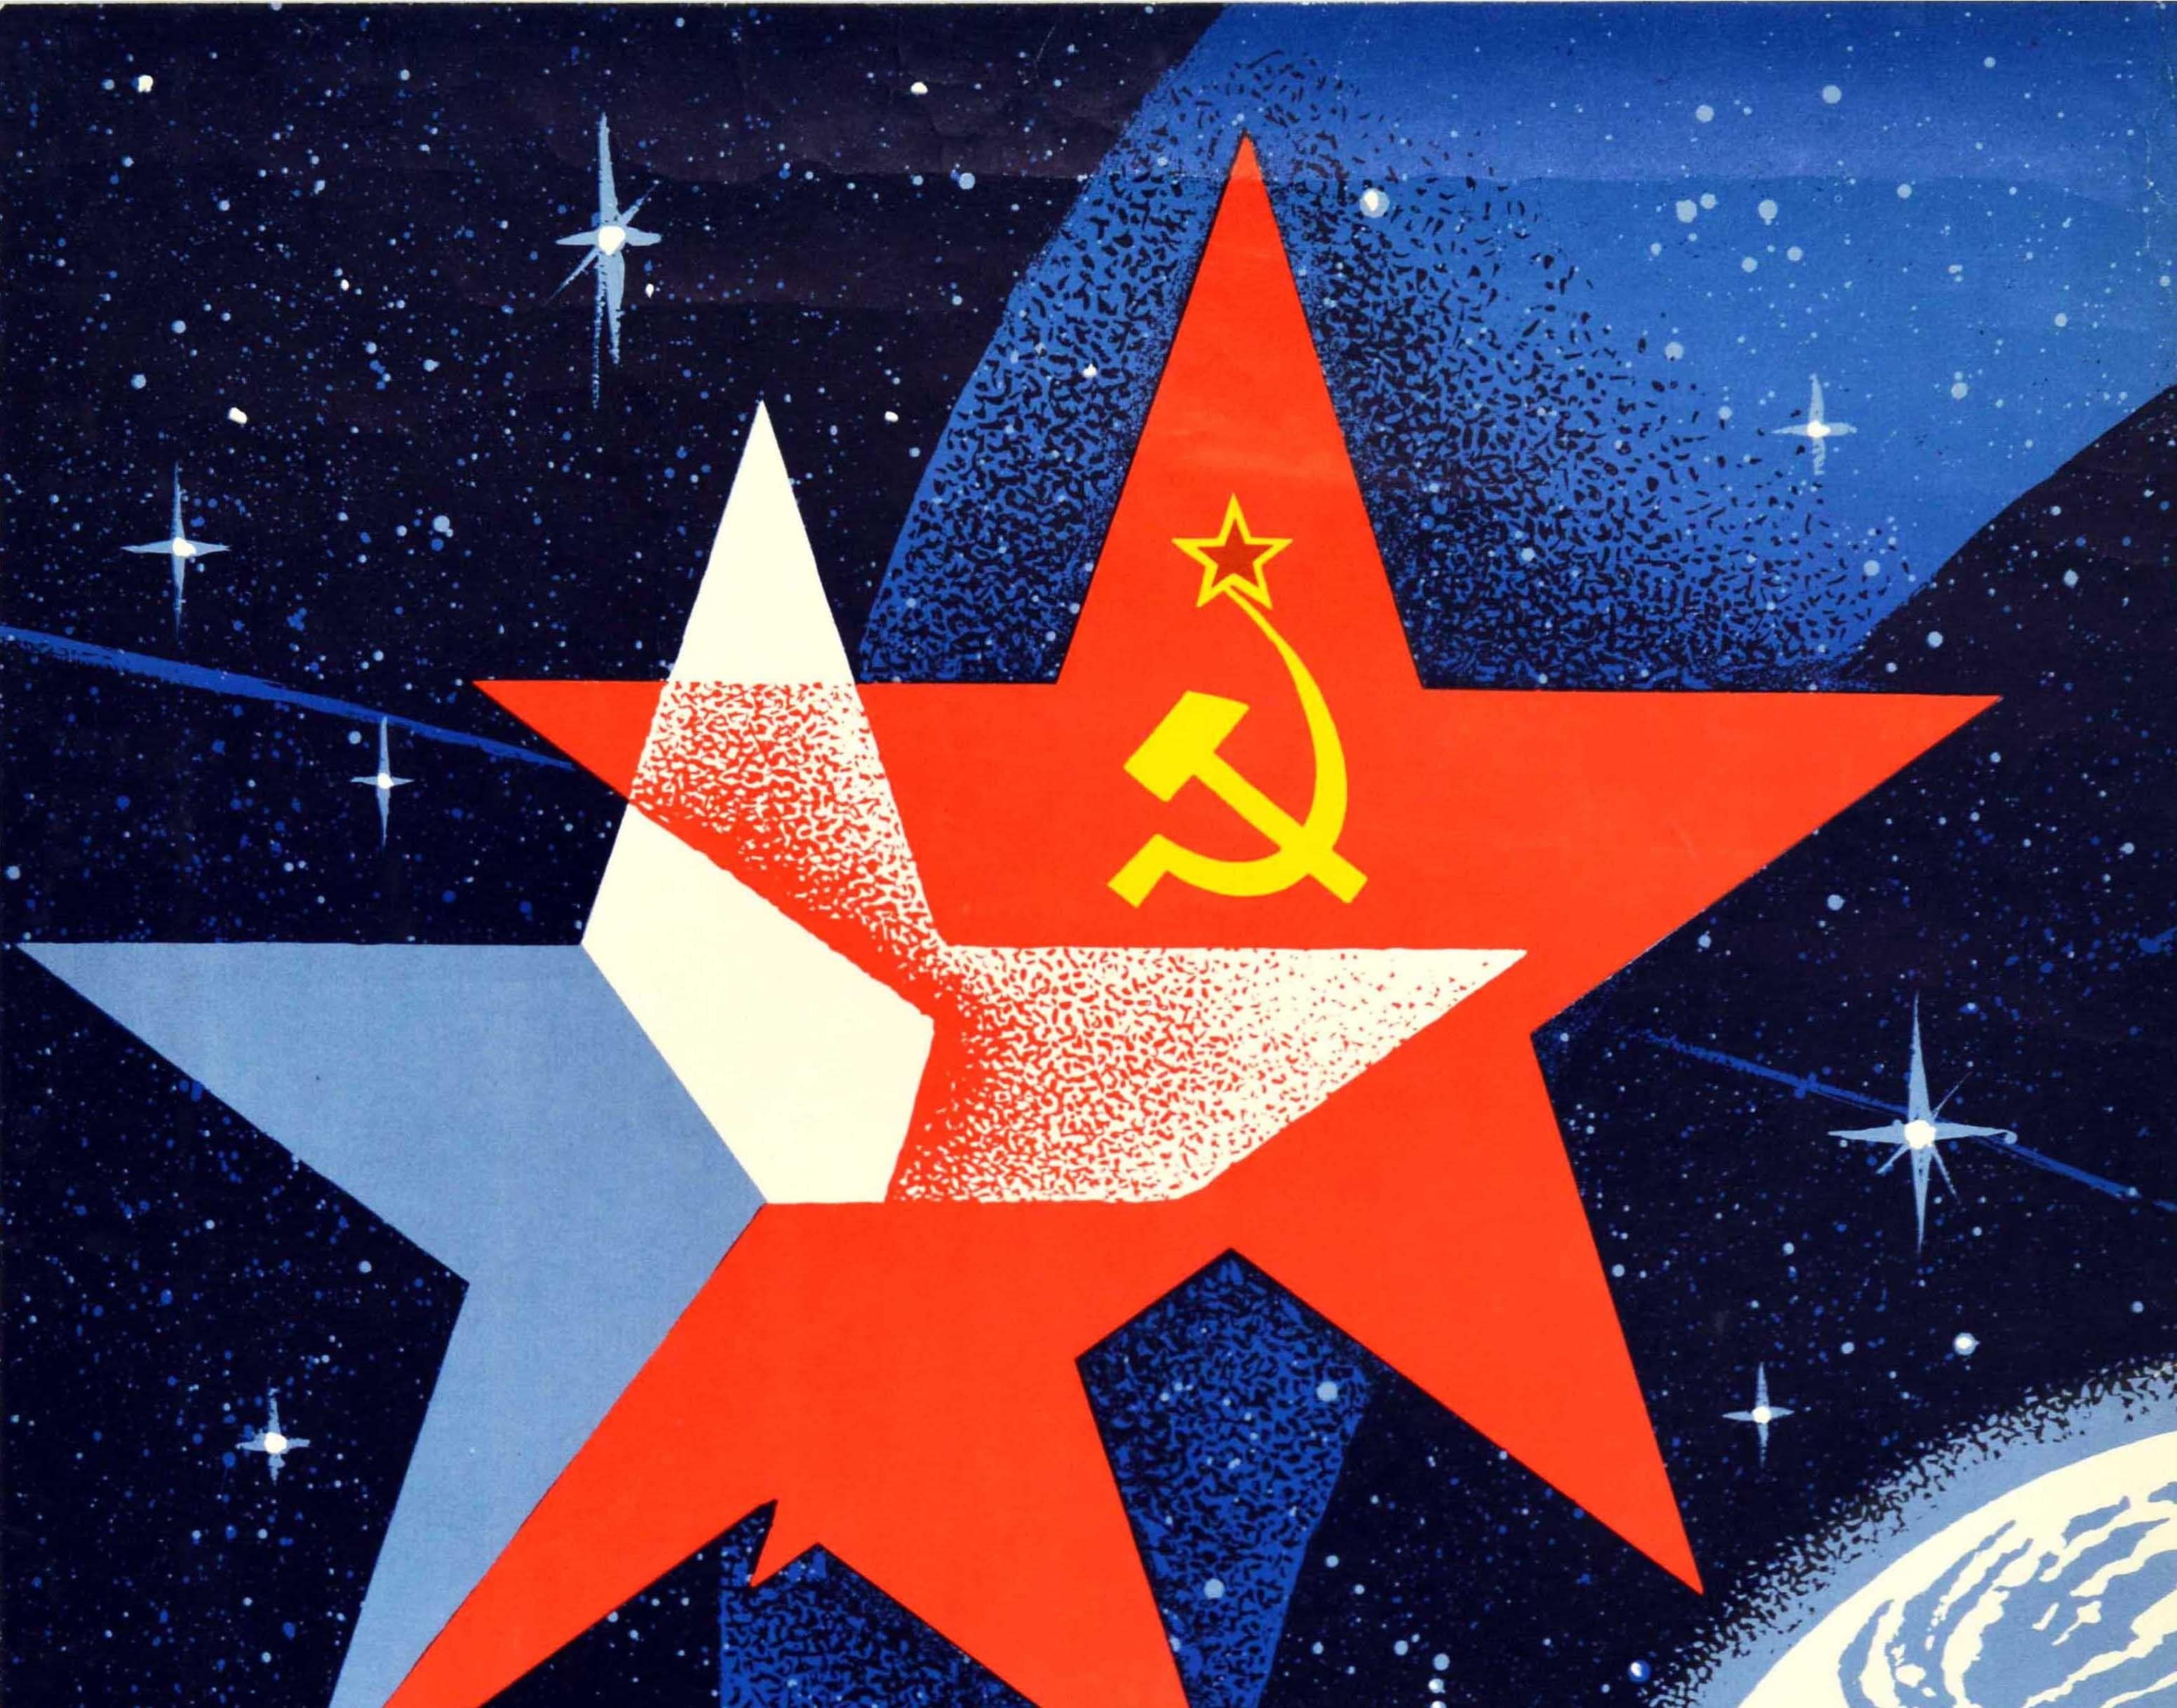 Affiche originale de propagande spatiale soviétique d'époque célébrant la mission spatiale commune soviéto-tchèque Soyouz 28 ? ??? 28, le 2 mars 1978. Cette superbe affiche représente deux étoiles représentant le drapeau de la Tchécoslovaquie et le